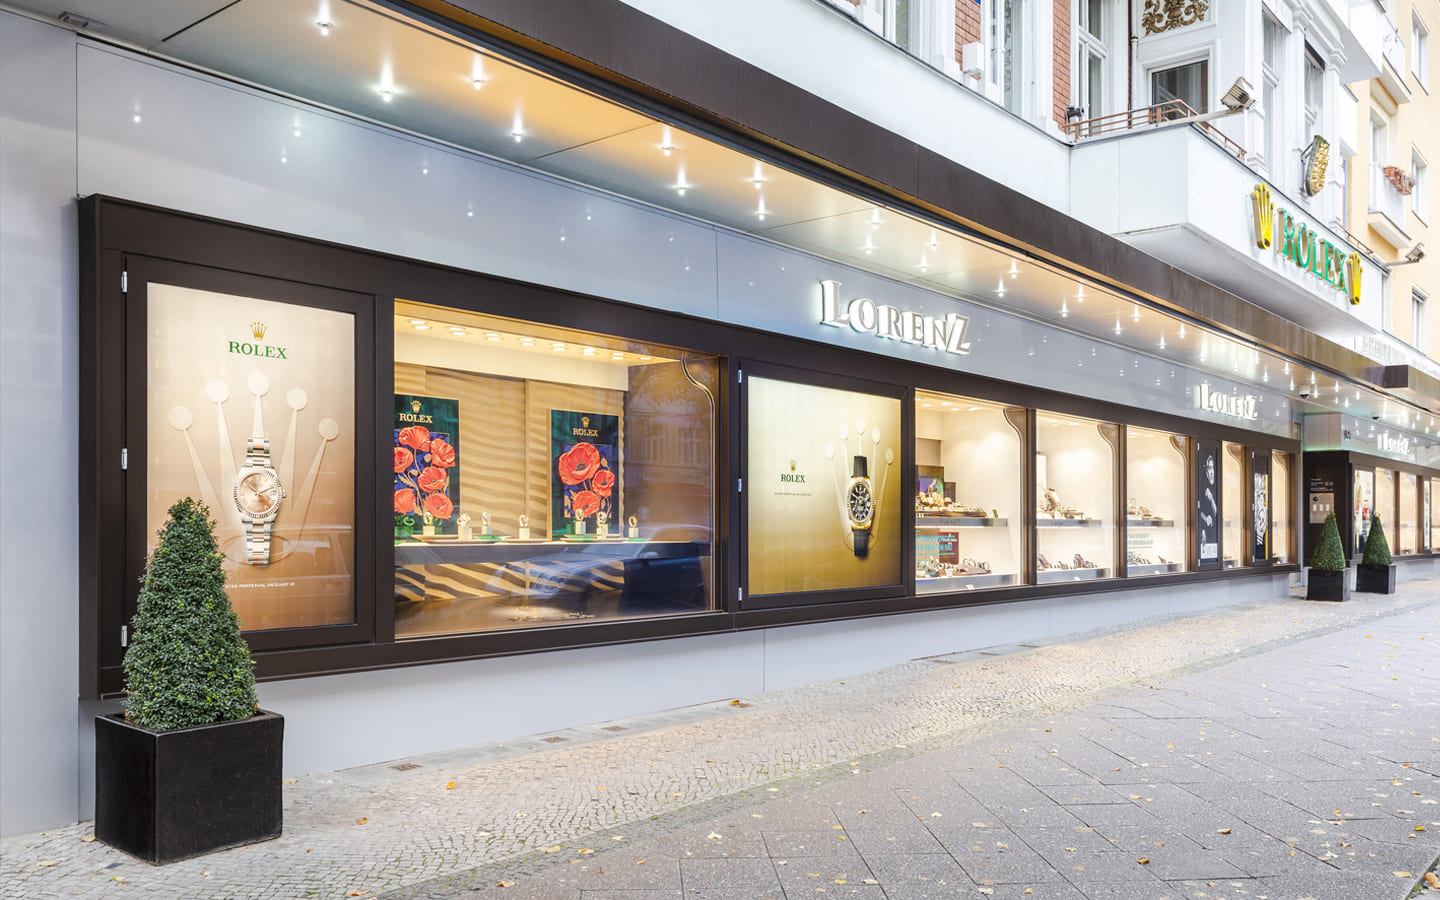 Außenansicht des Juweliergeschäftes Lorenz in Berlin. In den Schaufenstern sieht man Plakate von Rolex Uhren